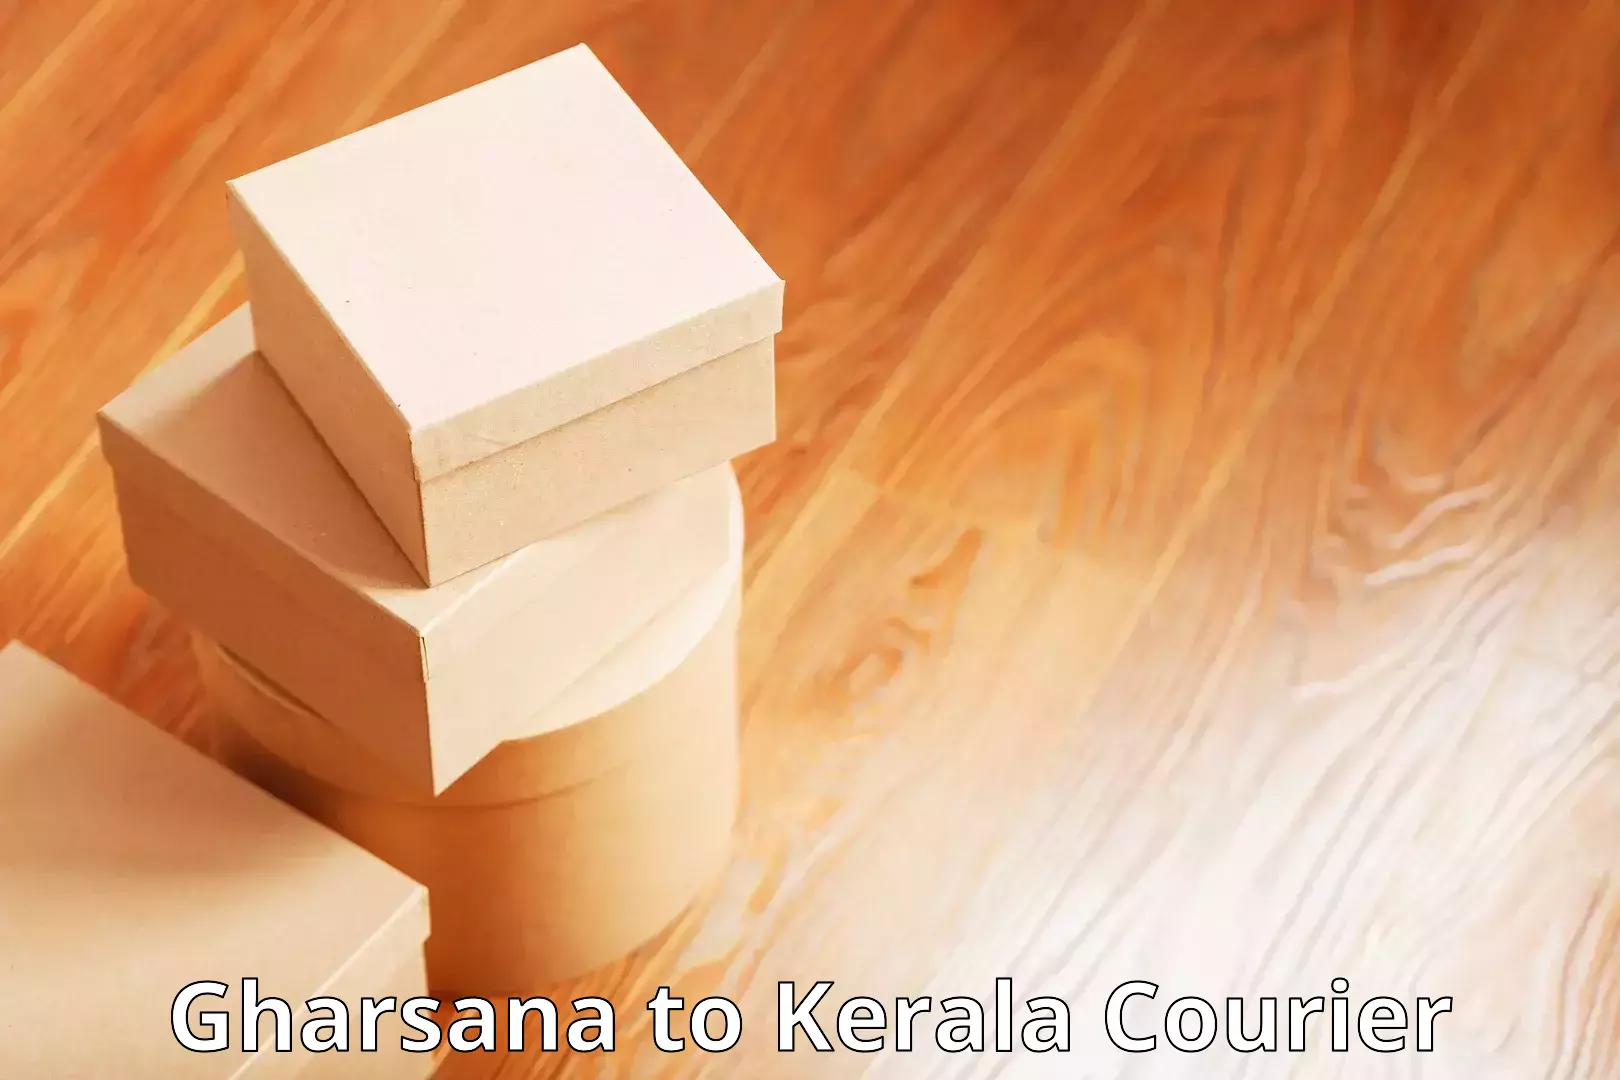 High-capacity parcel service Gharsana to Kattappana